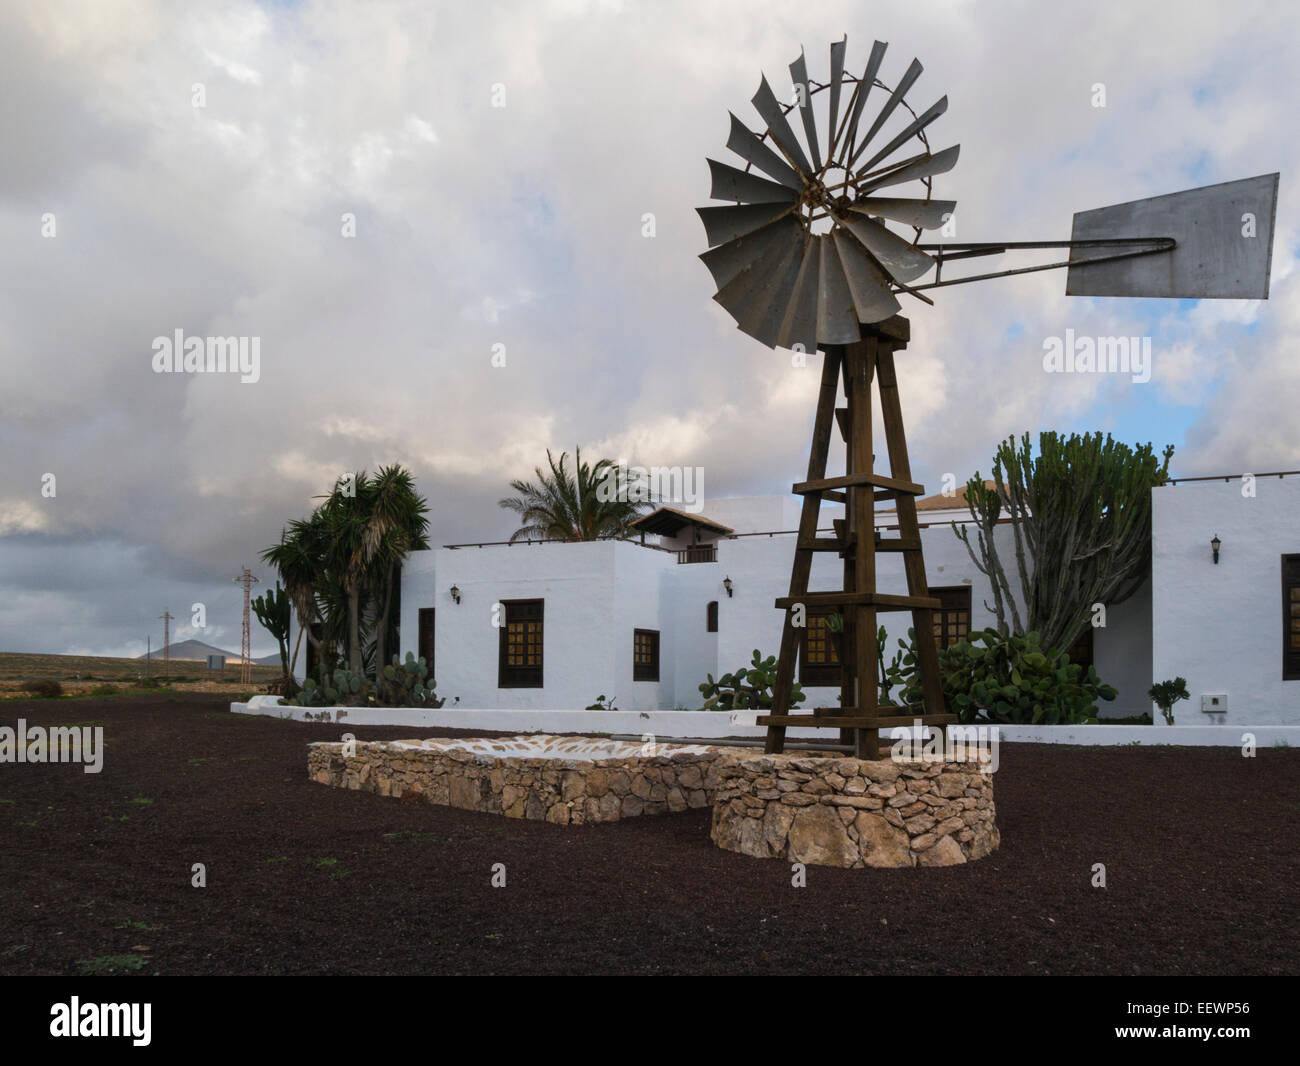 American Windmill at Centro de Artesania Molino de Antigua Fuerteventura Canary Islands cultural and artistic museum in a windmill Stock Photo